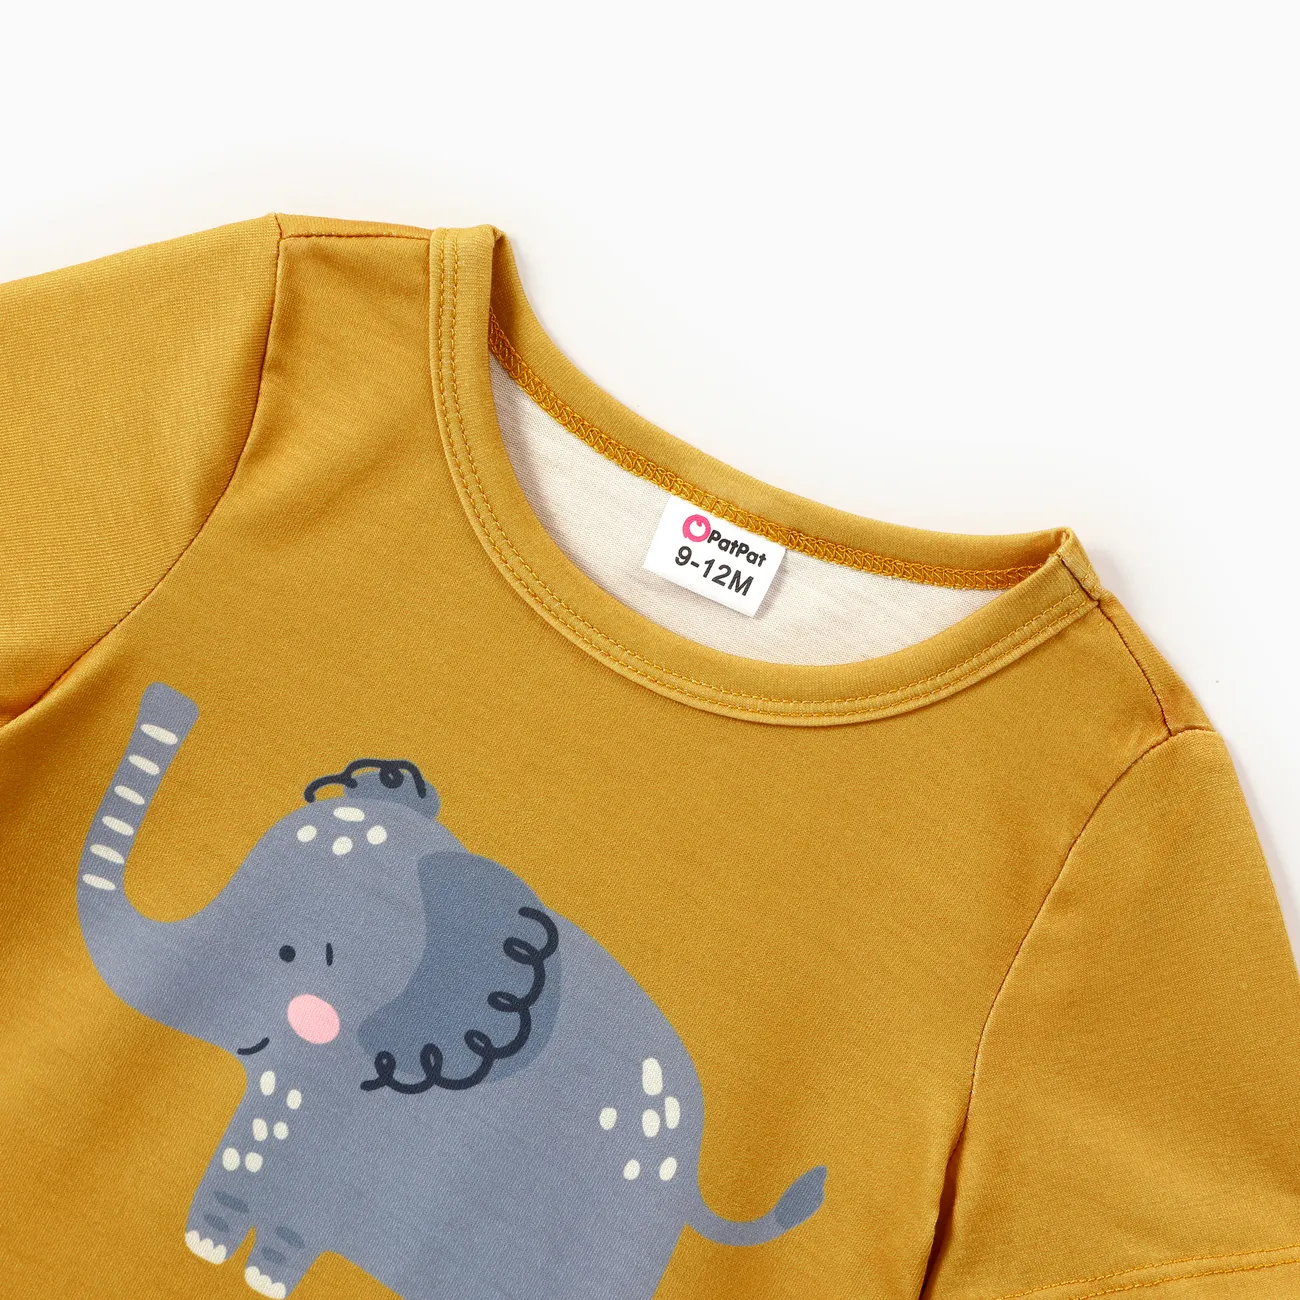 Baby Boy Childlike Animal Print Short Sleeve Tee  Yellow big image 1